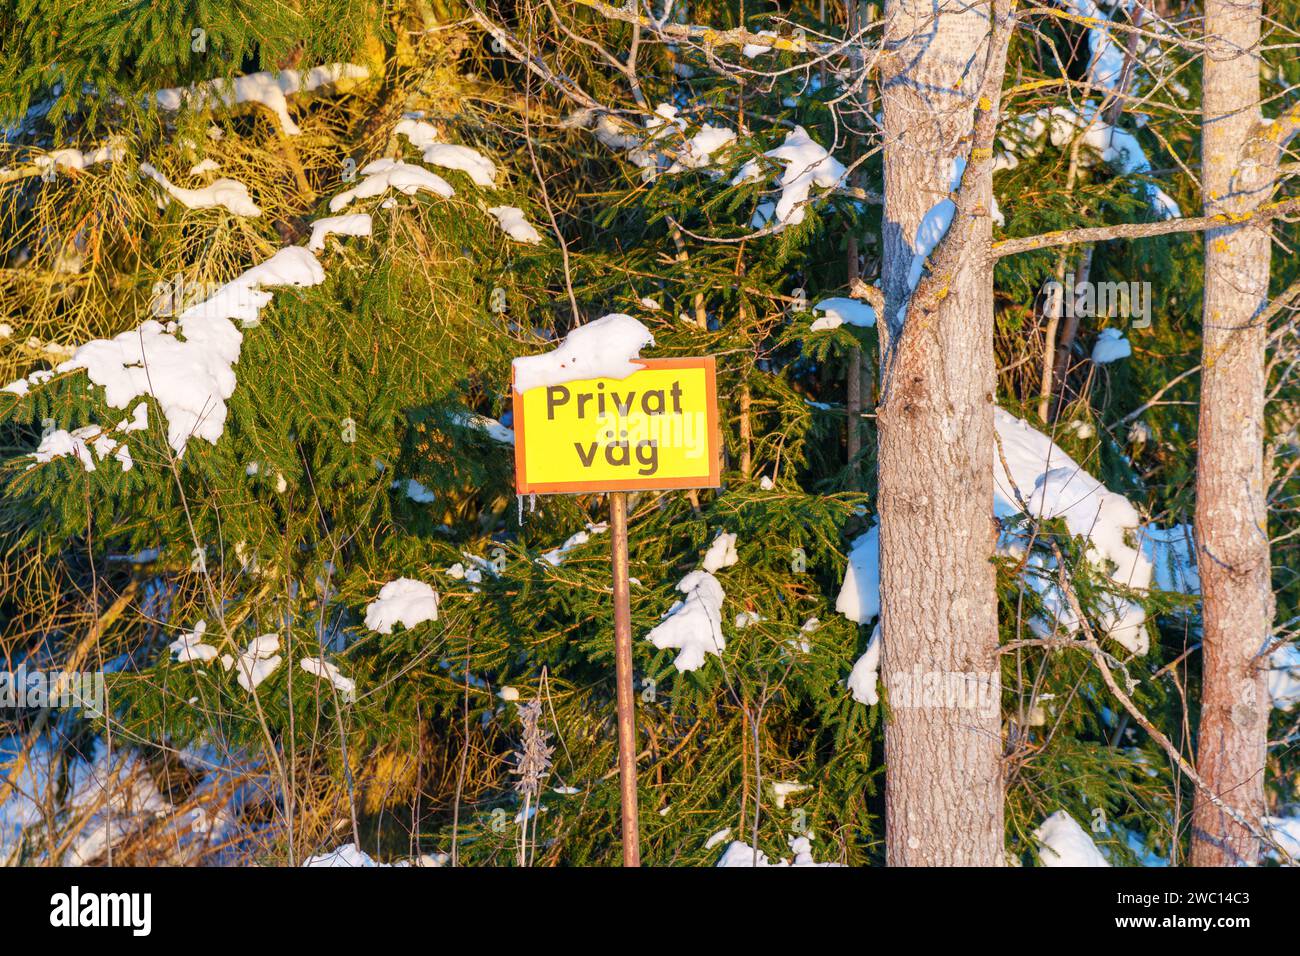 Un panneau en suédois indique Privat vag, ou route privée. Banque D'Images